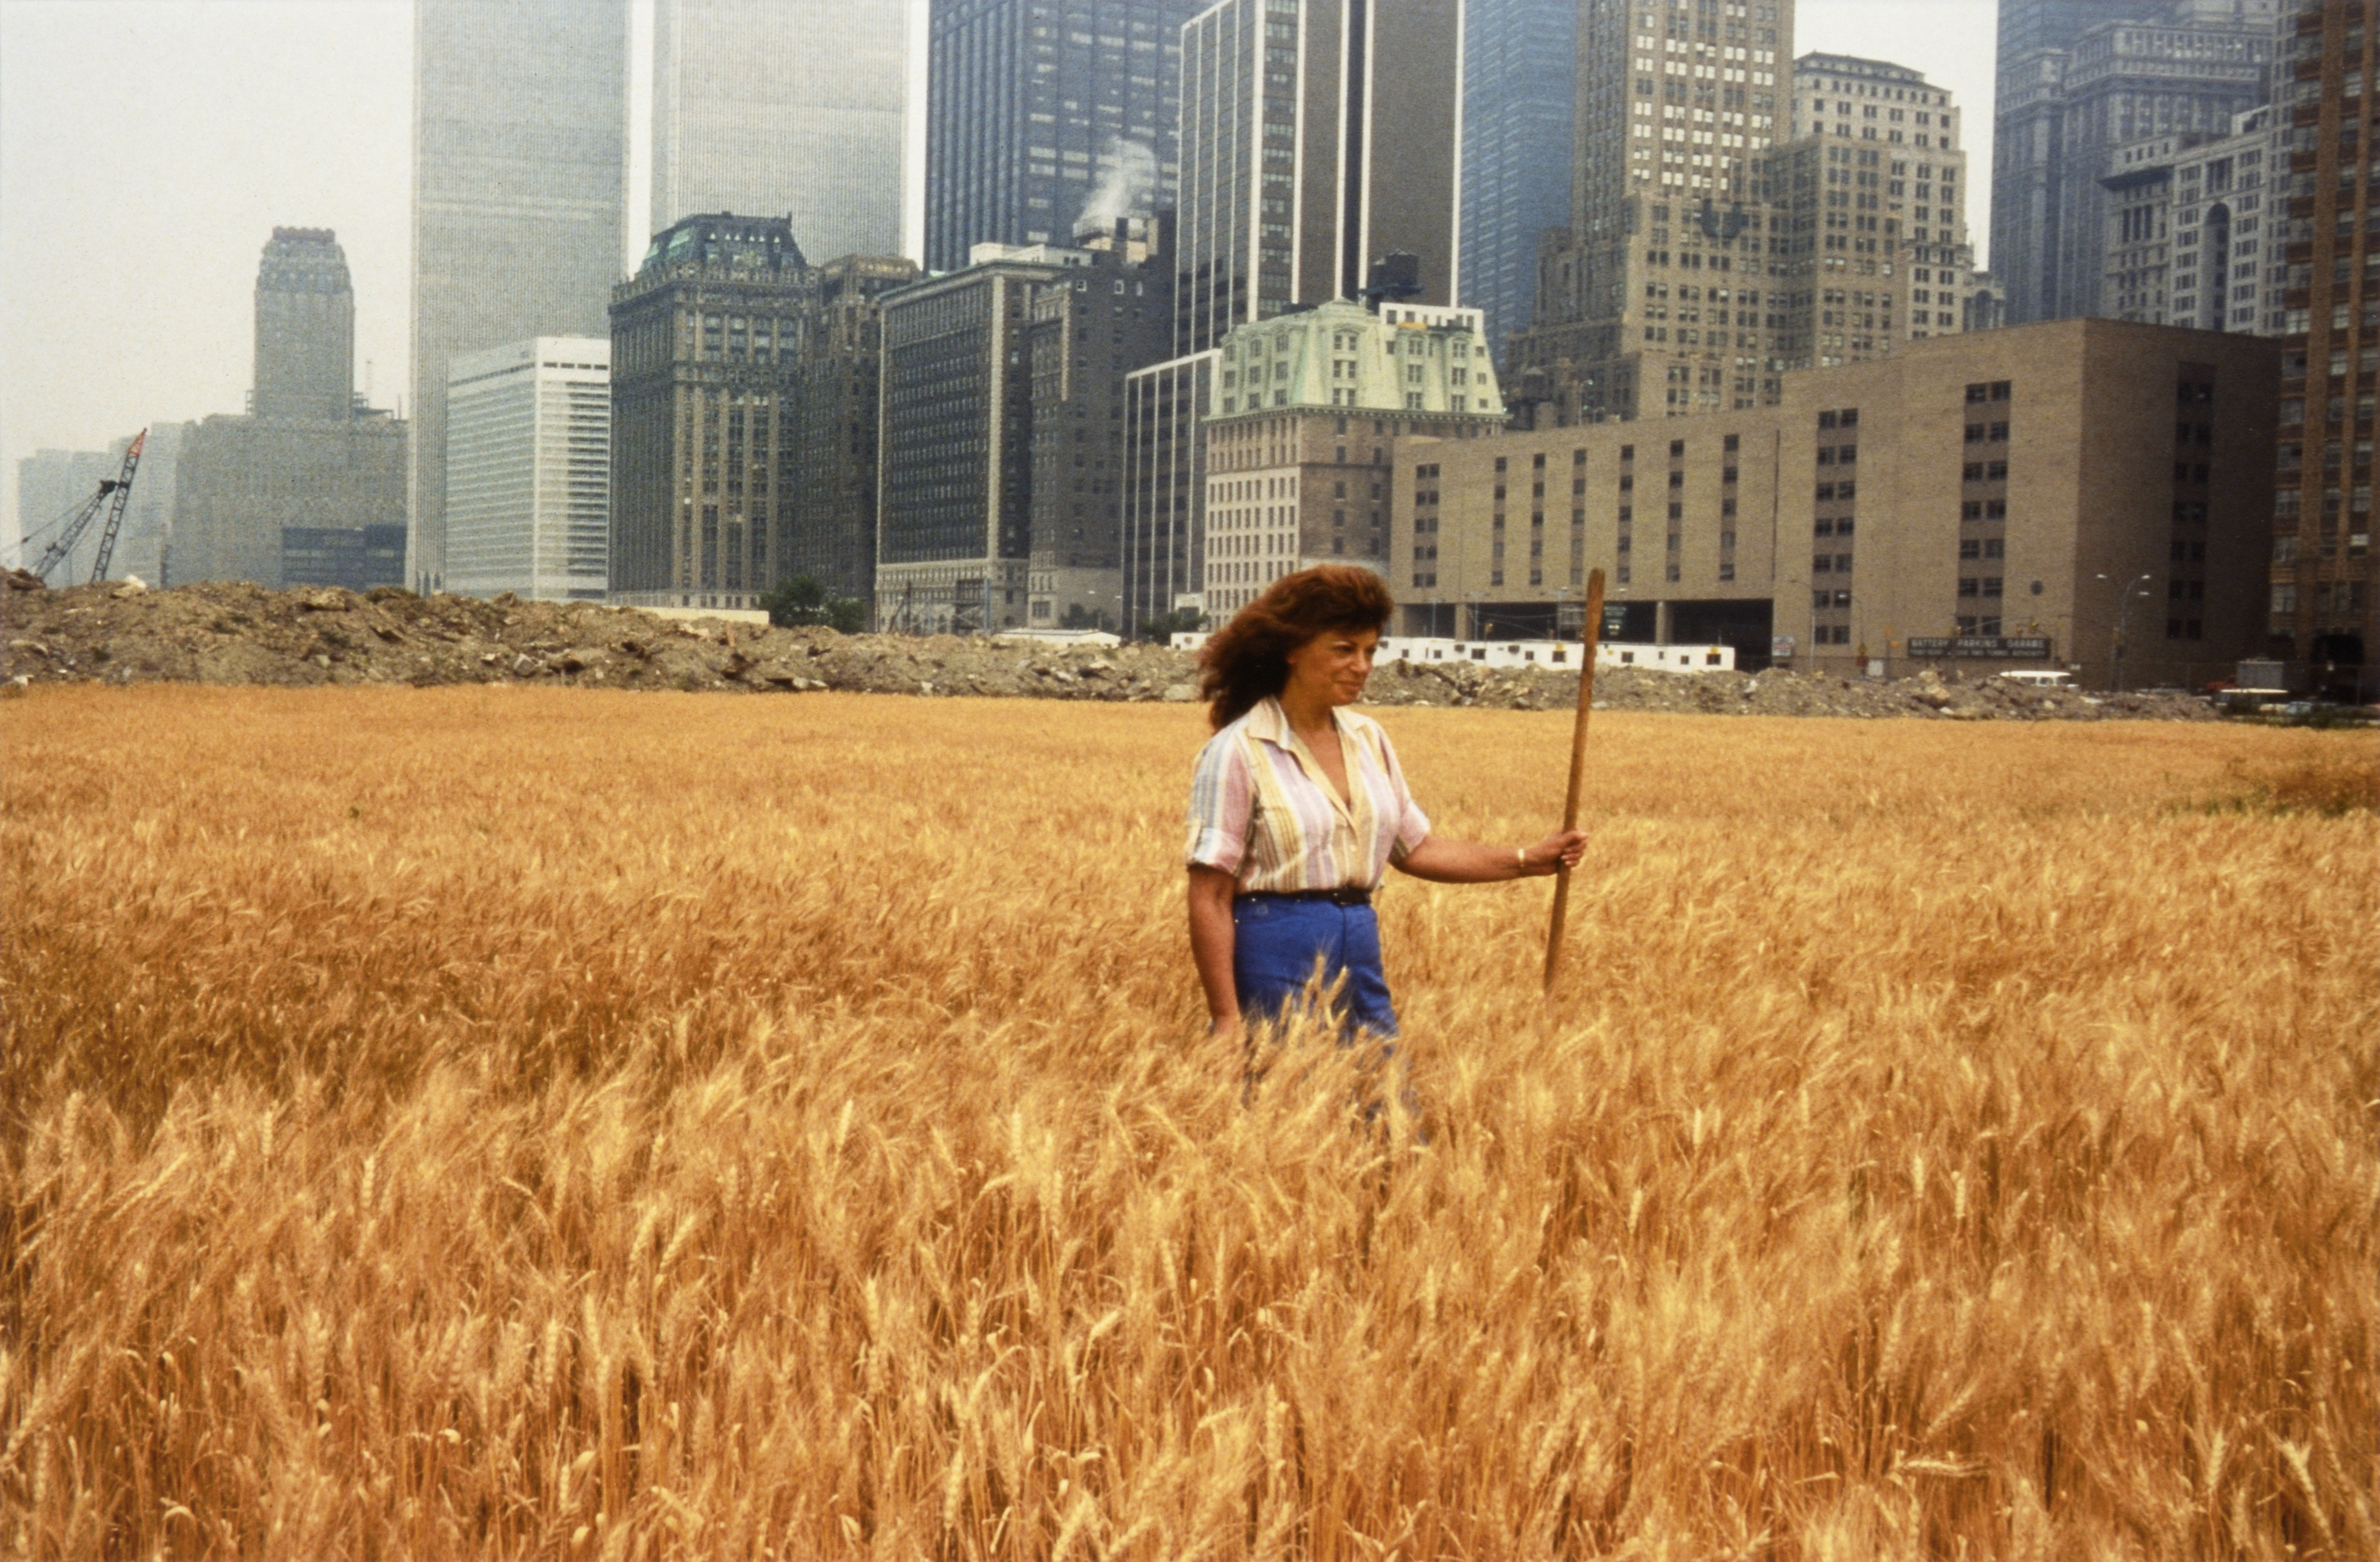 밀밭-대립: 배터리파크 쓰레기매립지,  다운타운 맨하탄- 밀밭에 선 아그네스 데네스  by Agnes Denes - 1982 